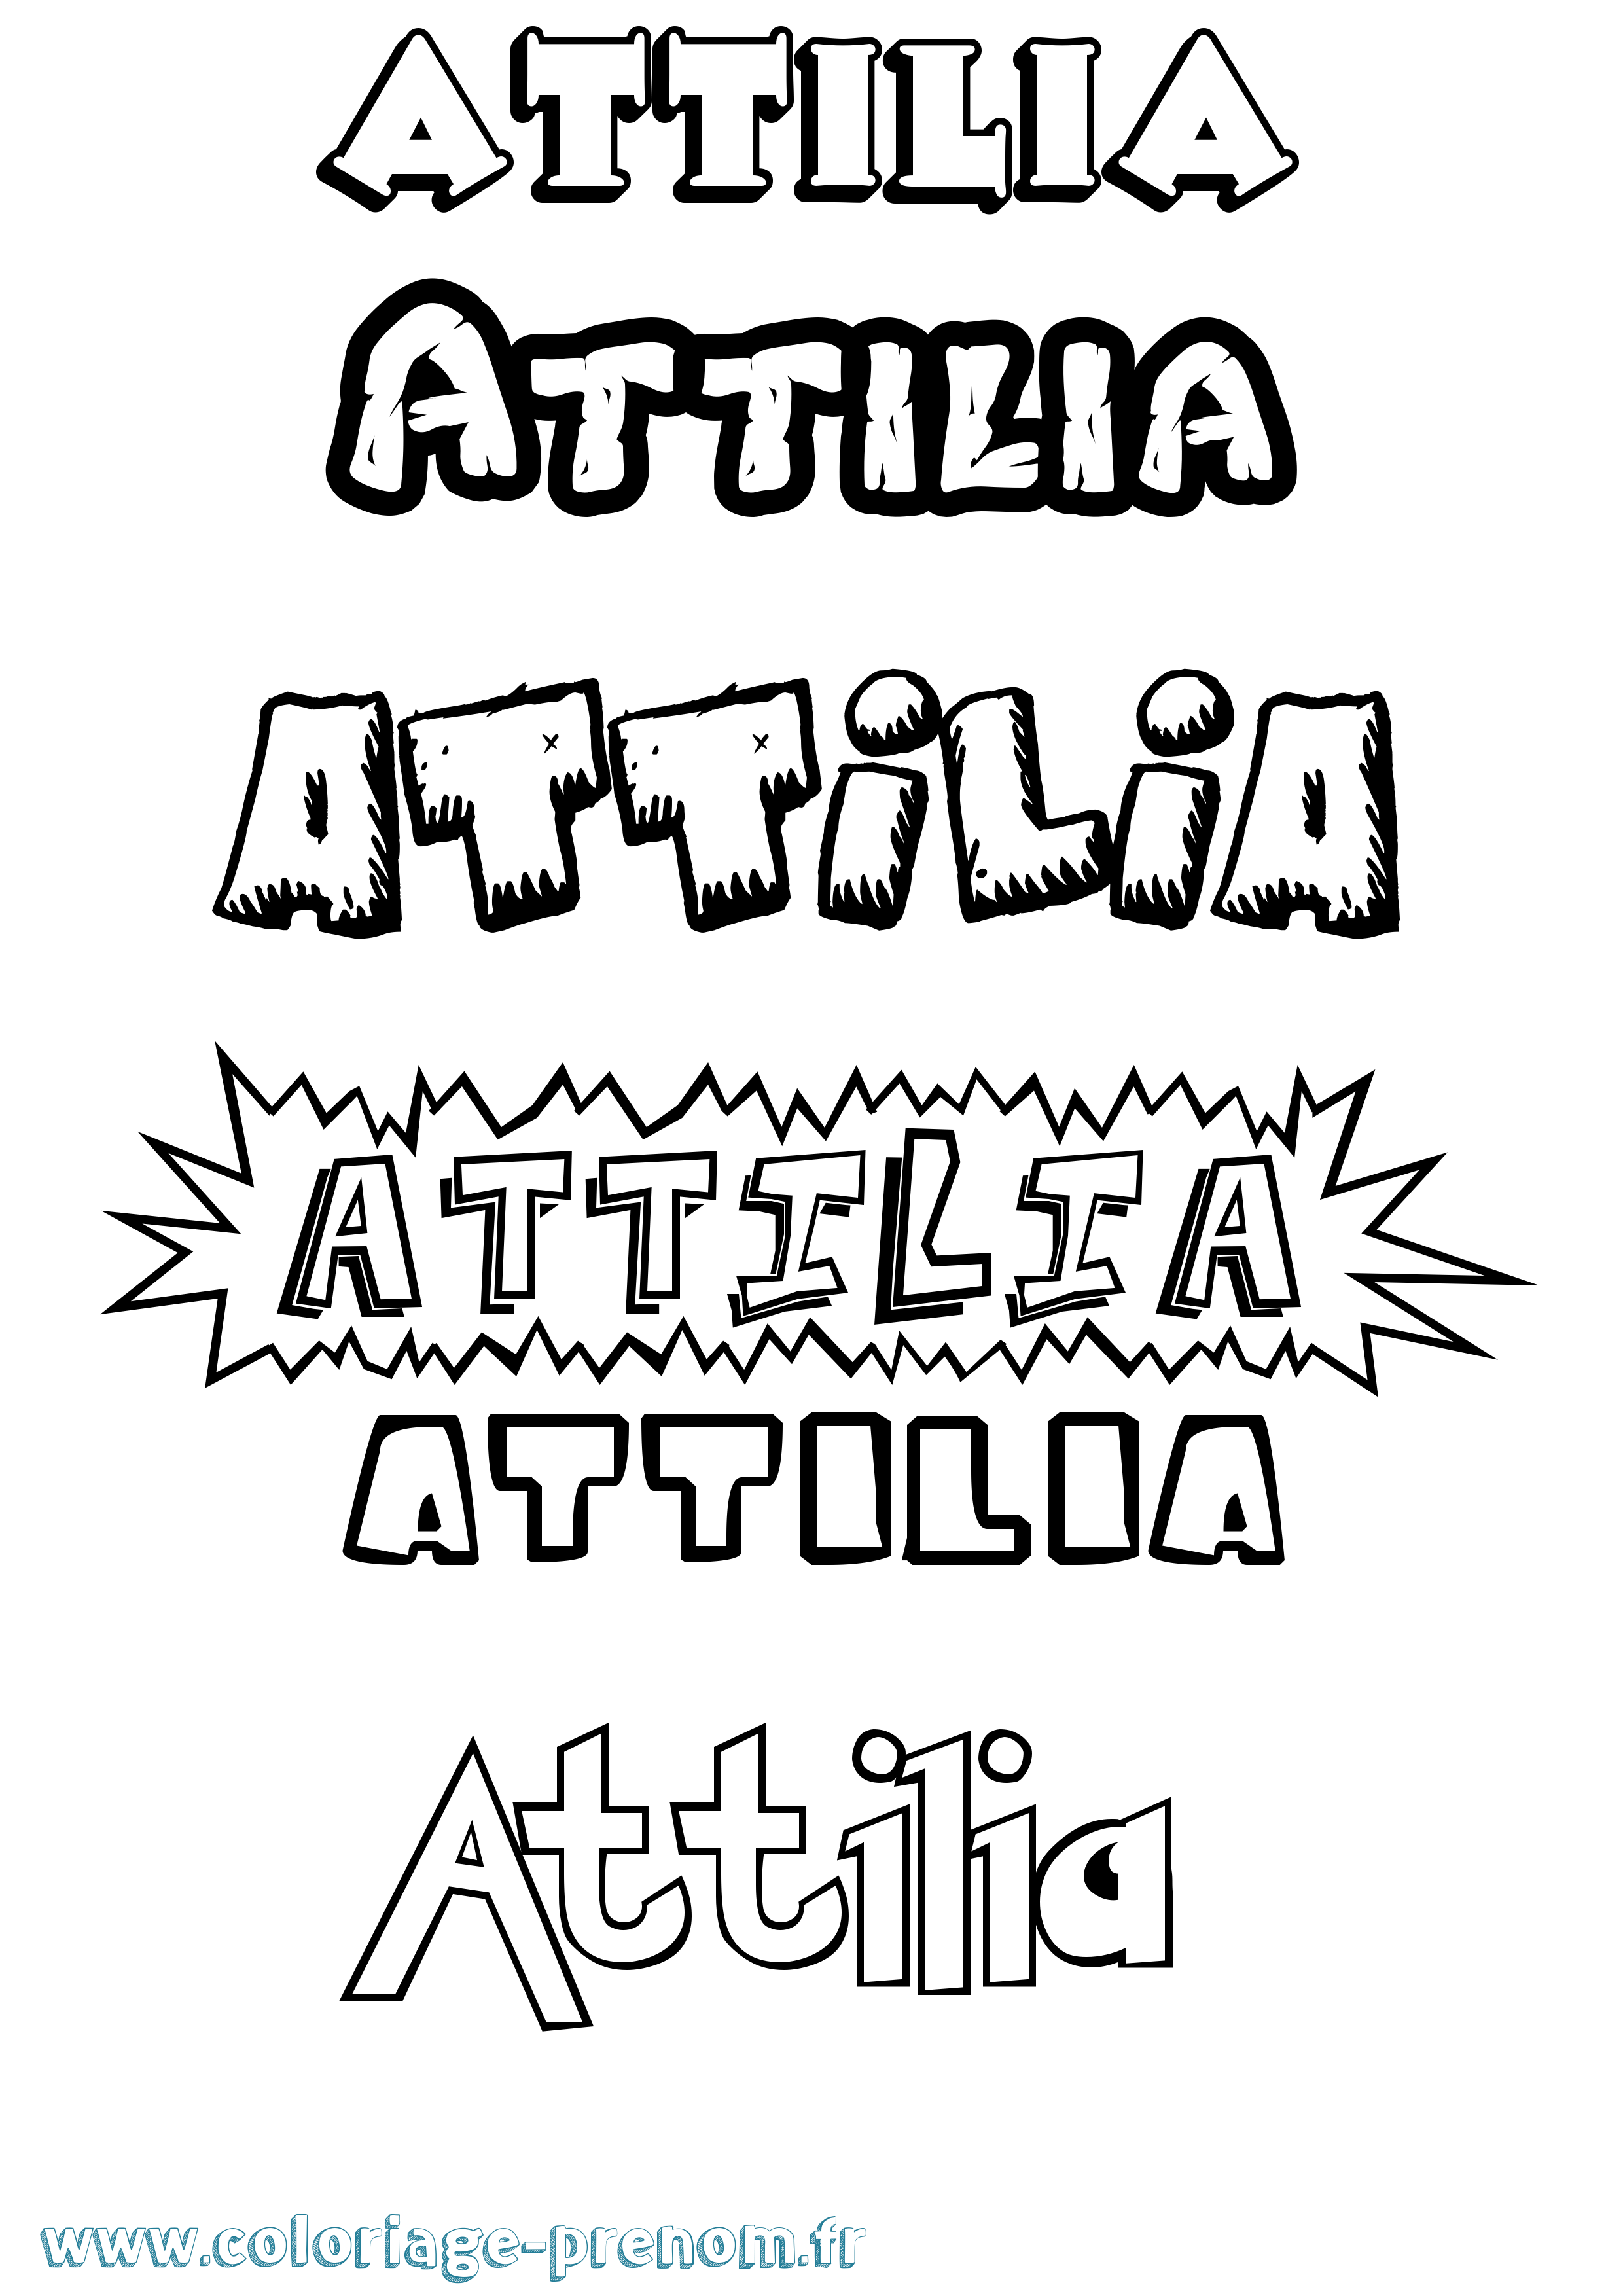 Coloriage prénom Attilia Dessin Animé